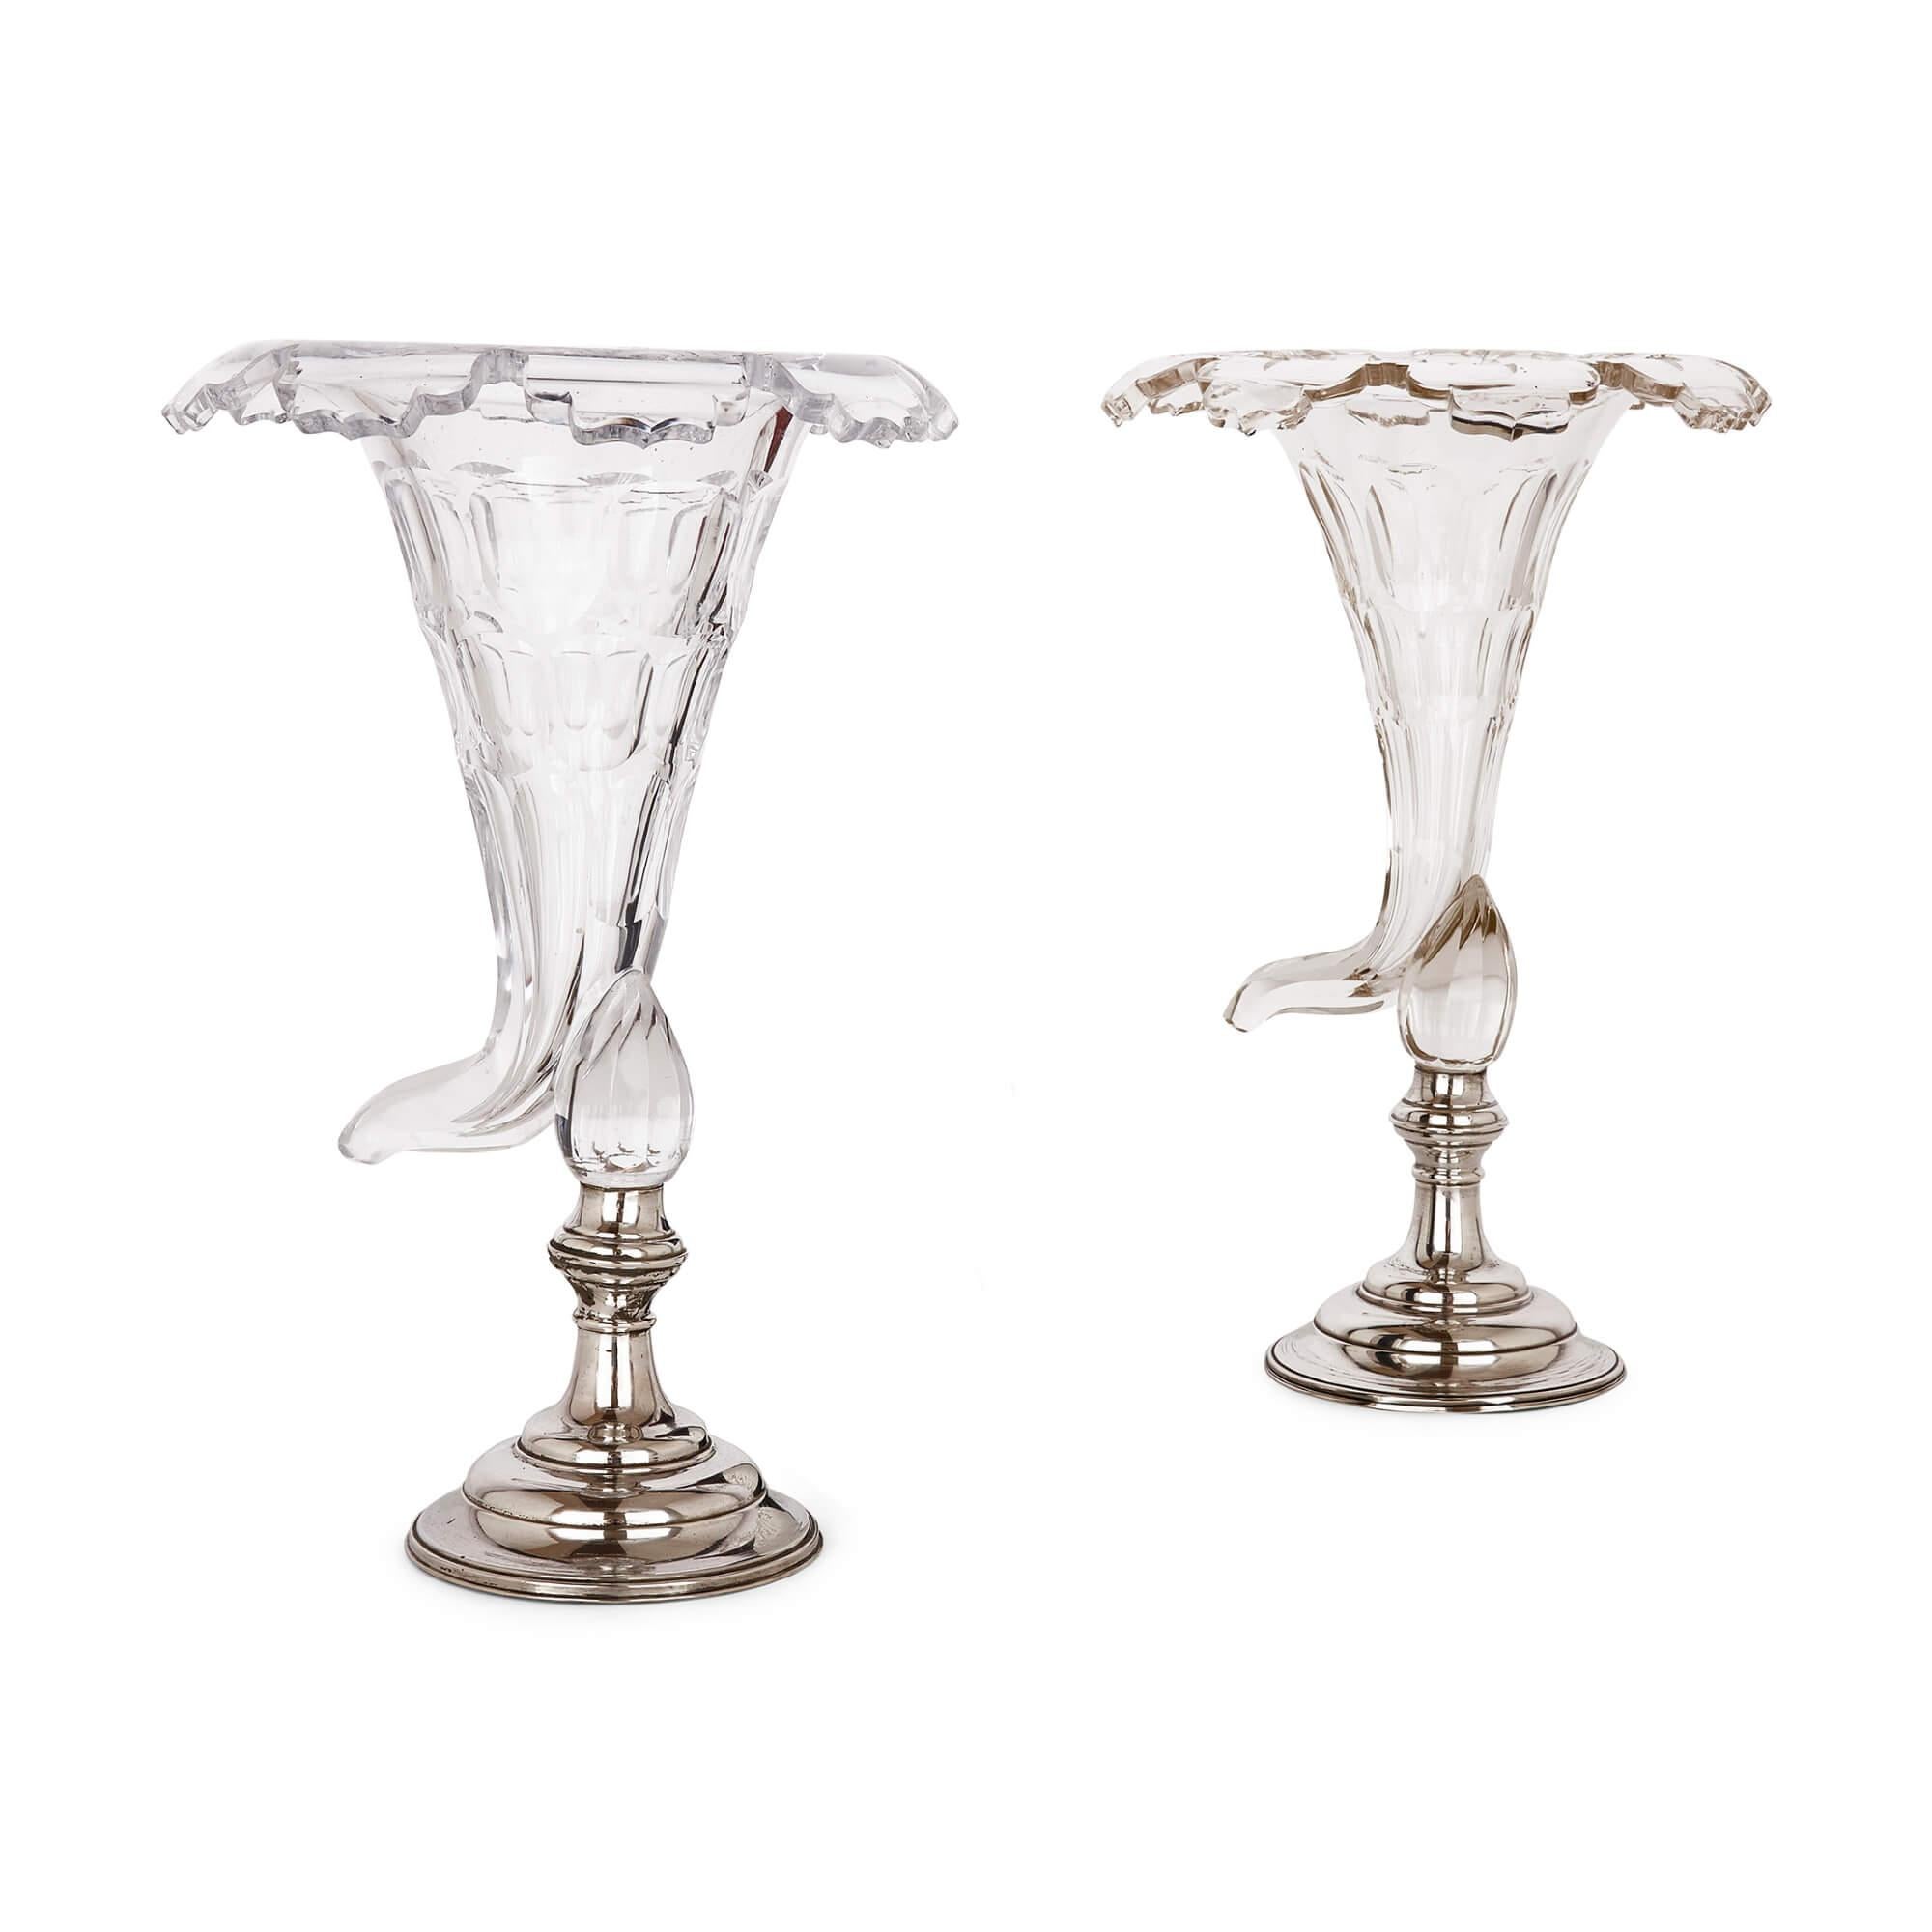 Paar französische Füllhornvasen aus Glas und Silbergeschirr
Französisch, Anfang 20. Jahrhundert
Höhe 36cm, Durchmesser 23cm

Diese exzellenten Vasen sind aus Glas und Silberblech gefertigt und wurden im Frankreich des frühen 20. Sie bestehen aus